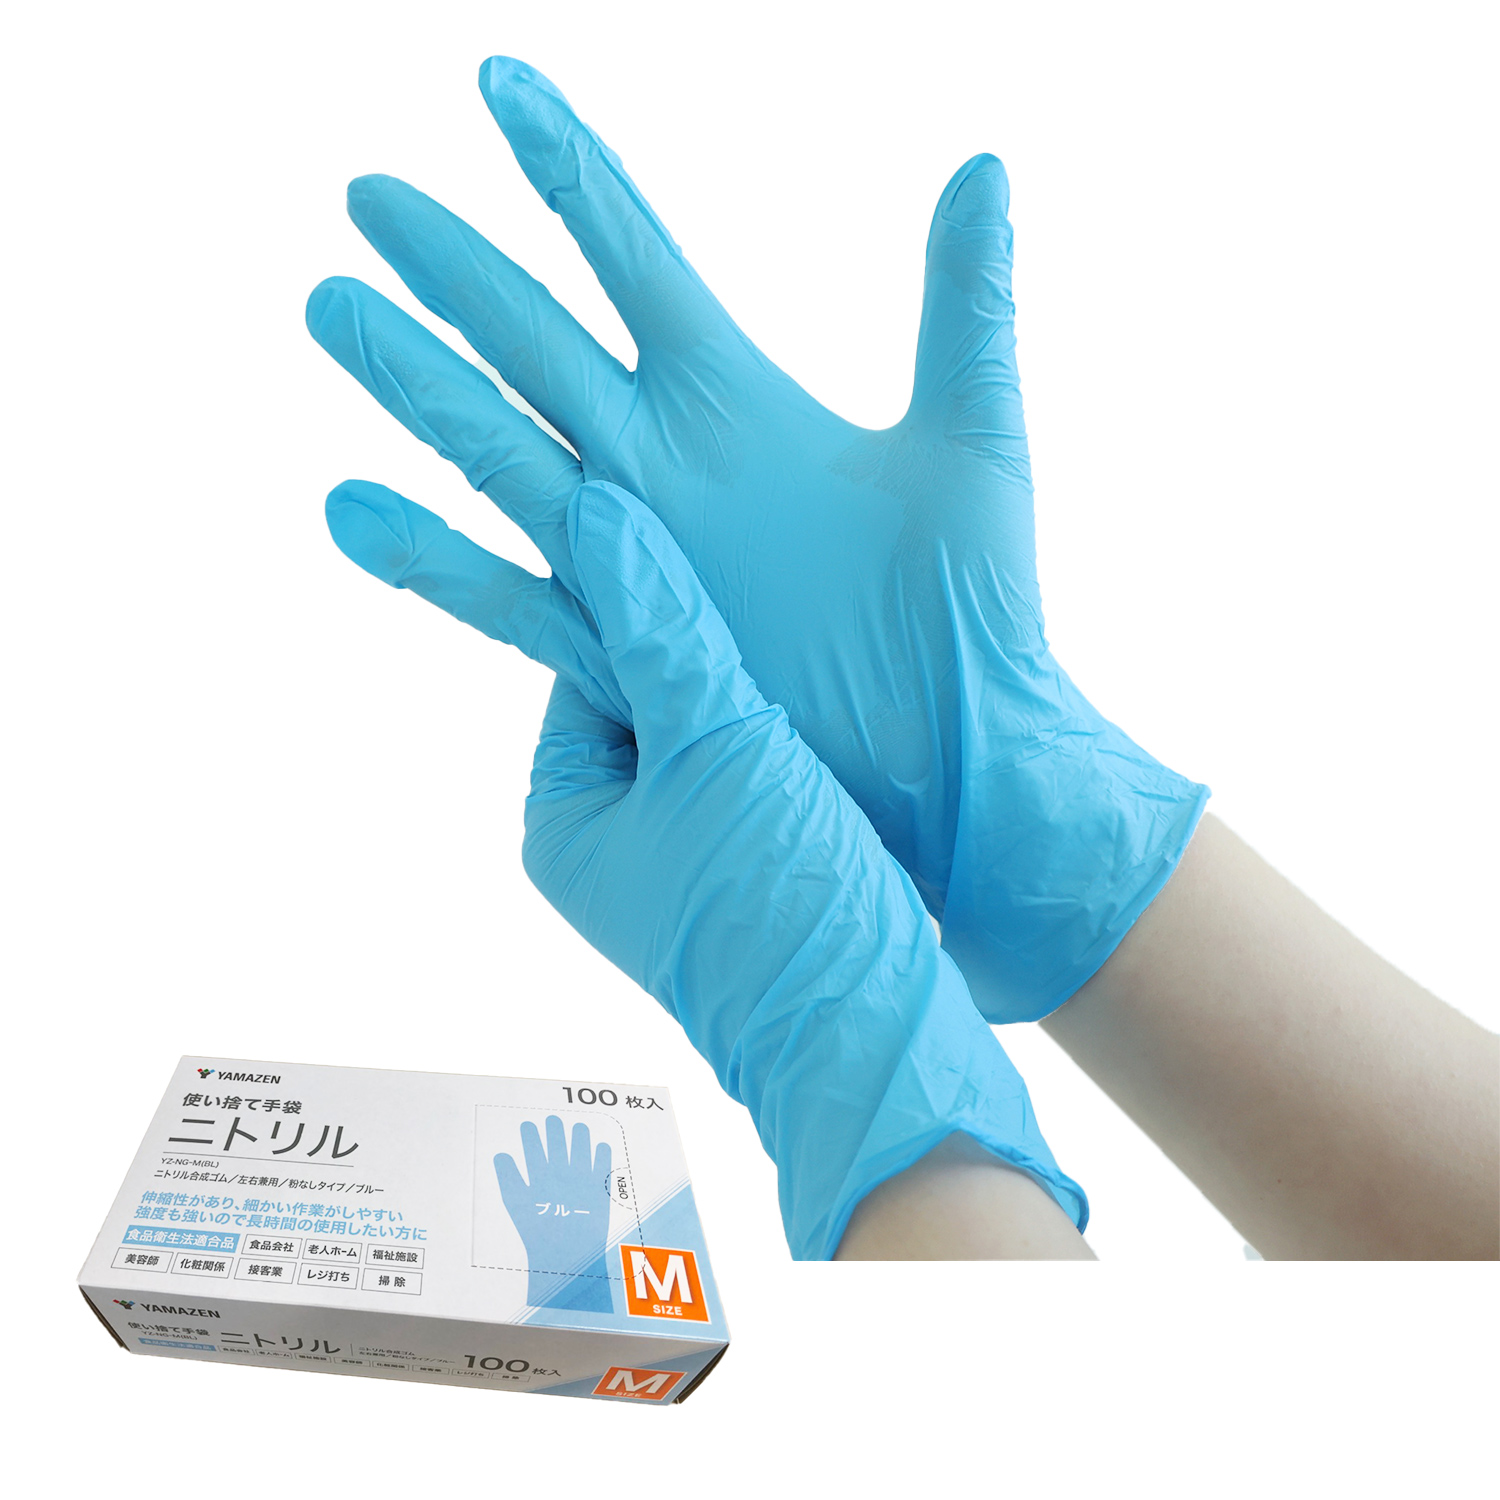 ニトリル手袋 100枚 ニトリル 使い捨て パウダーフリー 食品衛生法適合品 ブルー 手袋 グローブ...